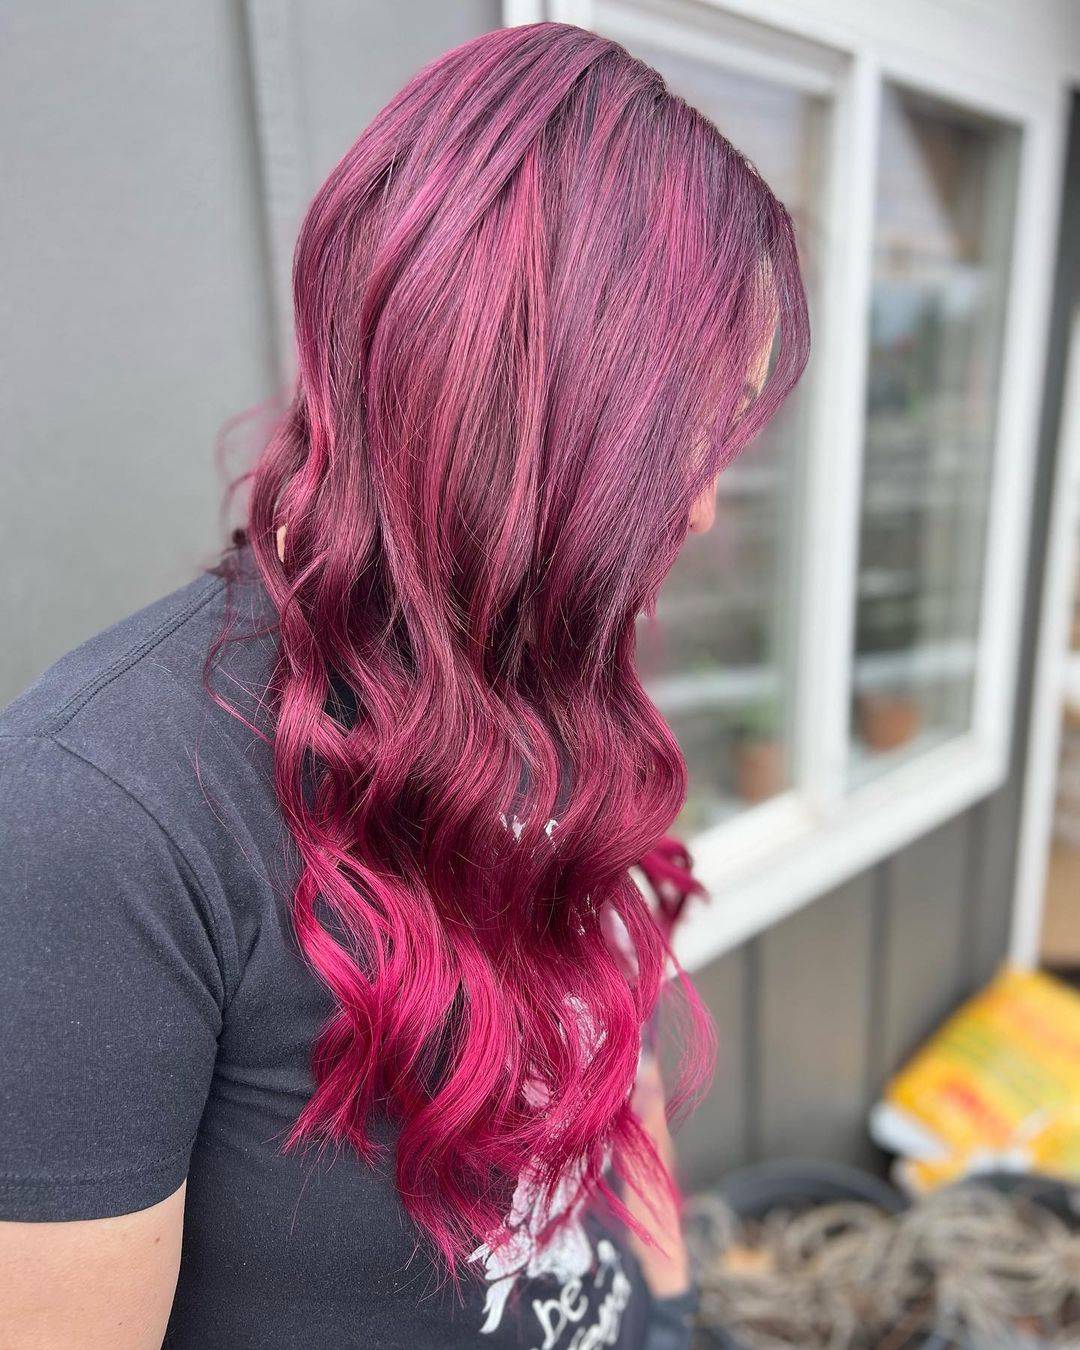 Burgundy hair color 270 burgundy hair color | burgundy hair color for women | burgundy hair color highlights Burgundy Hair Color